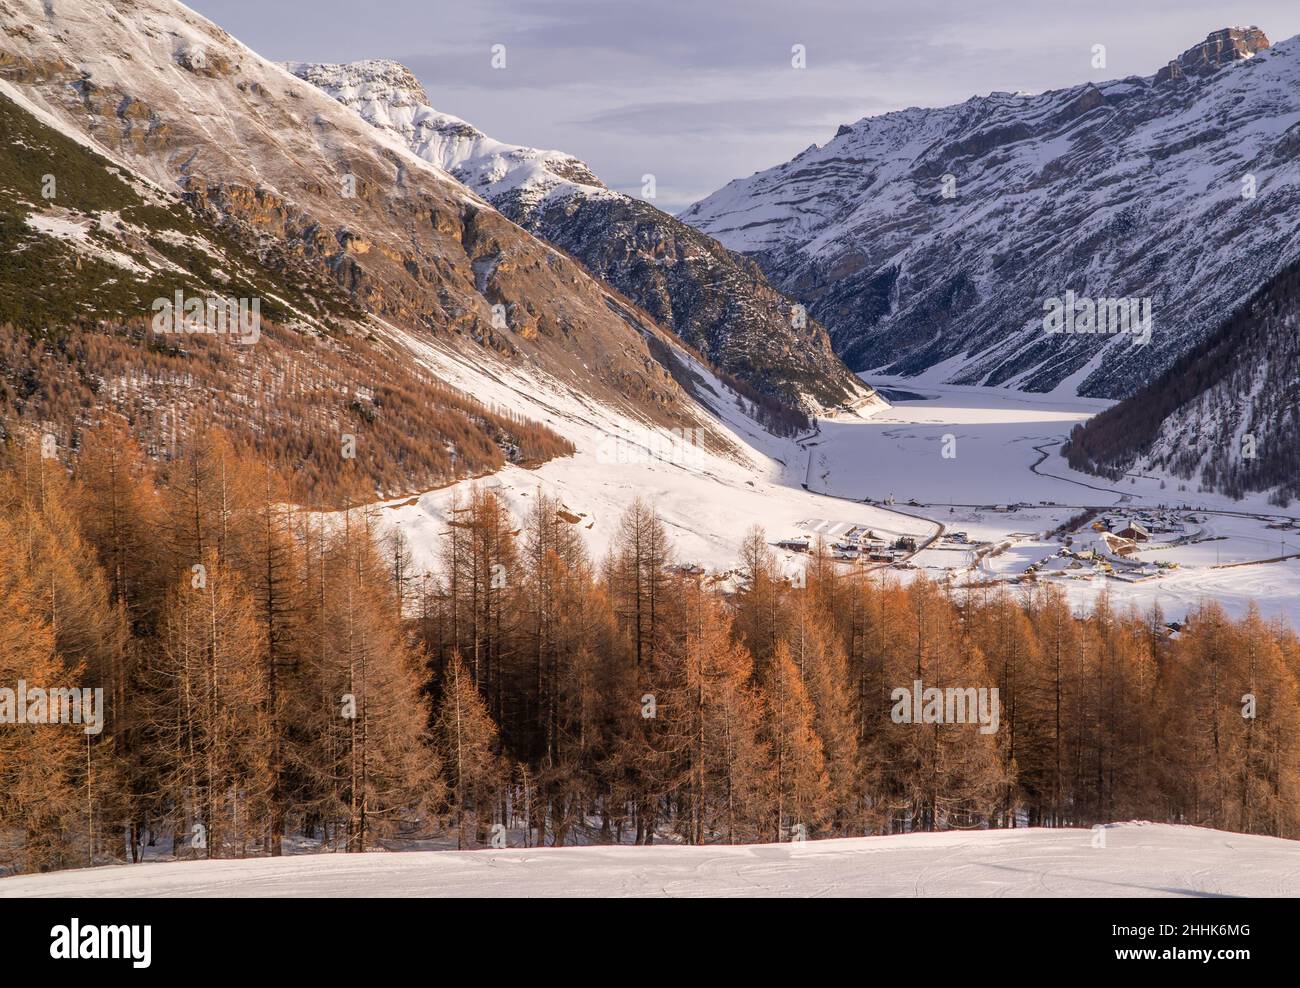 Un beau paysage d'une station de ski dans les Alpes, Livigno, Italie Banque D'Images